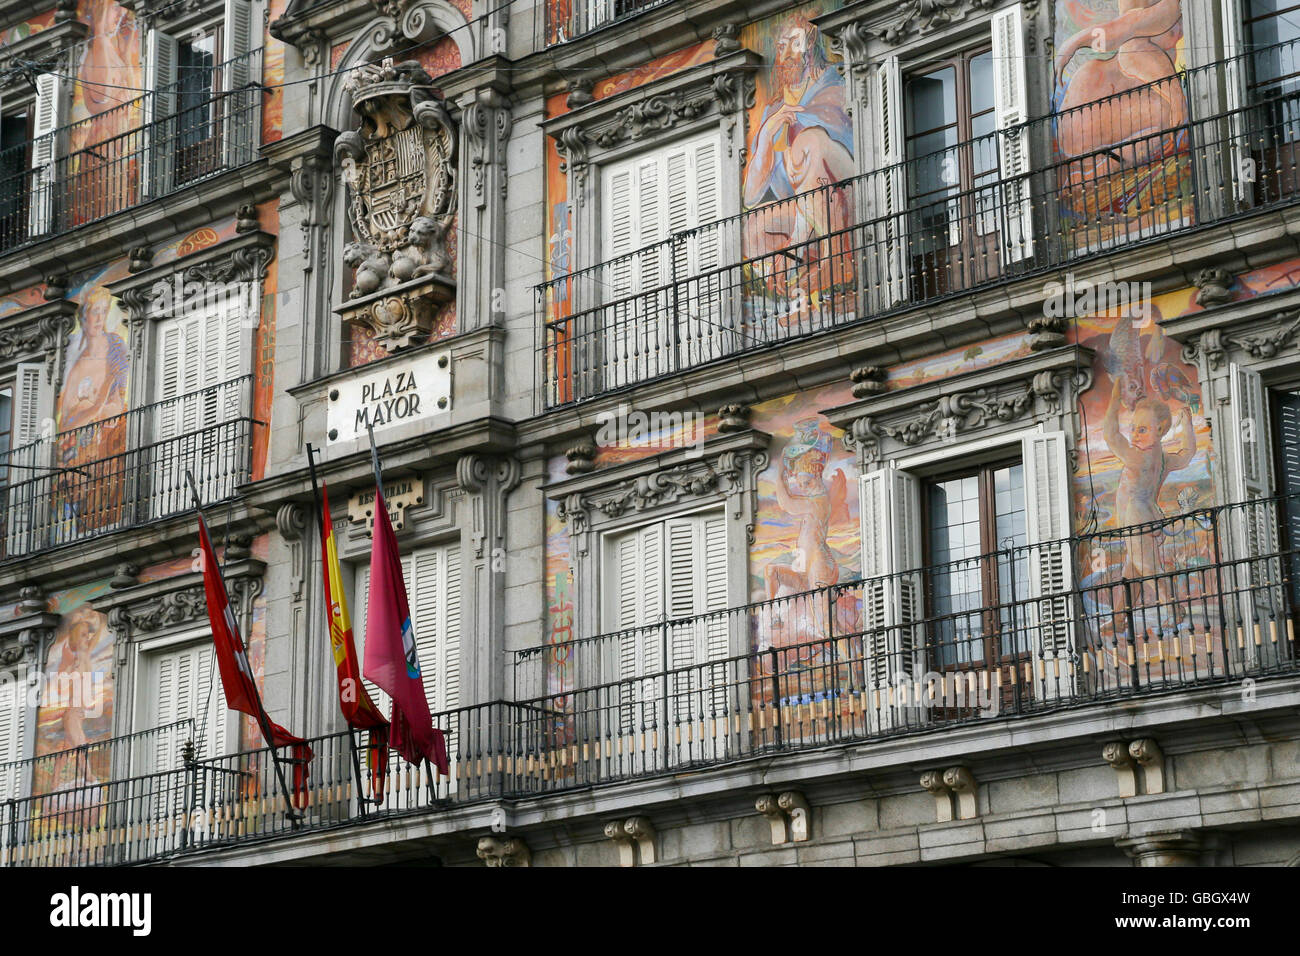 Fachada de un edificio de la Plaza Mayor, una plaza grande y popular destino turístico en Madrid, España Foto de stock